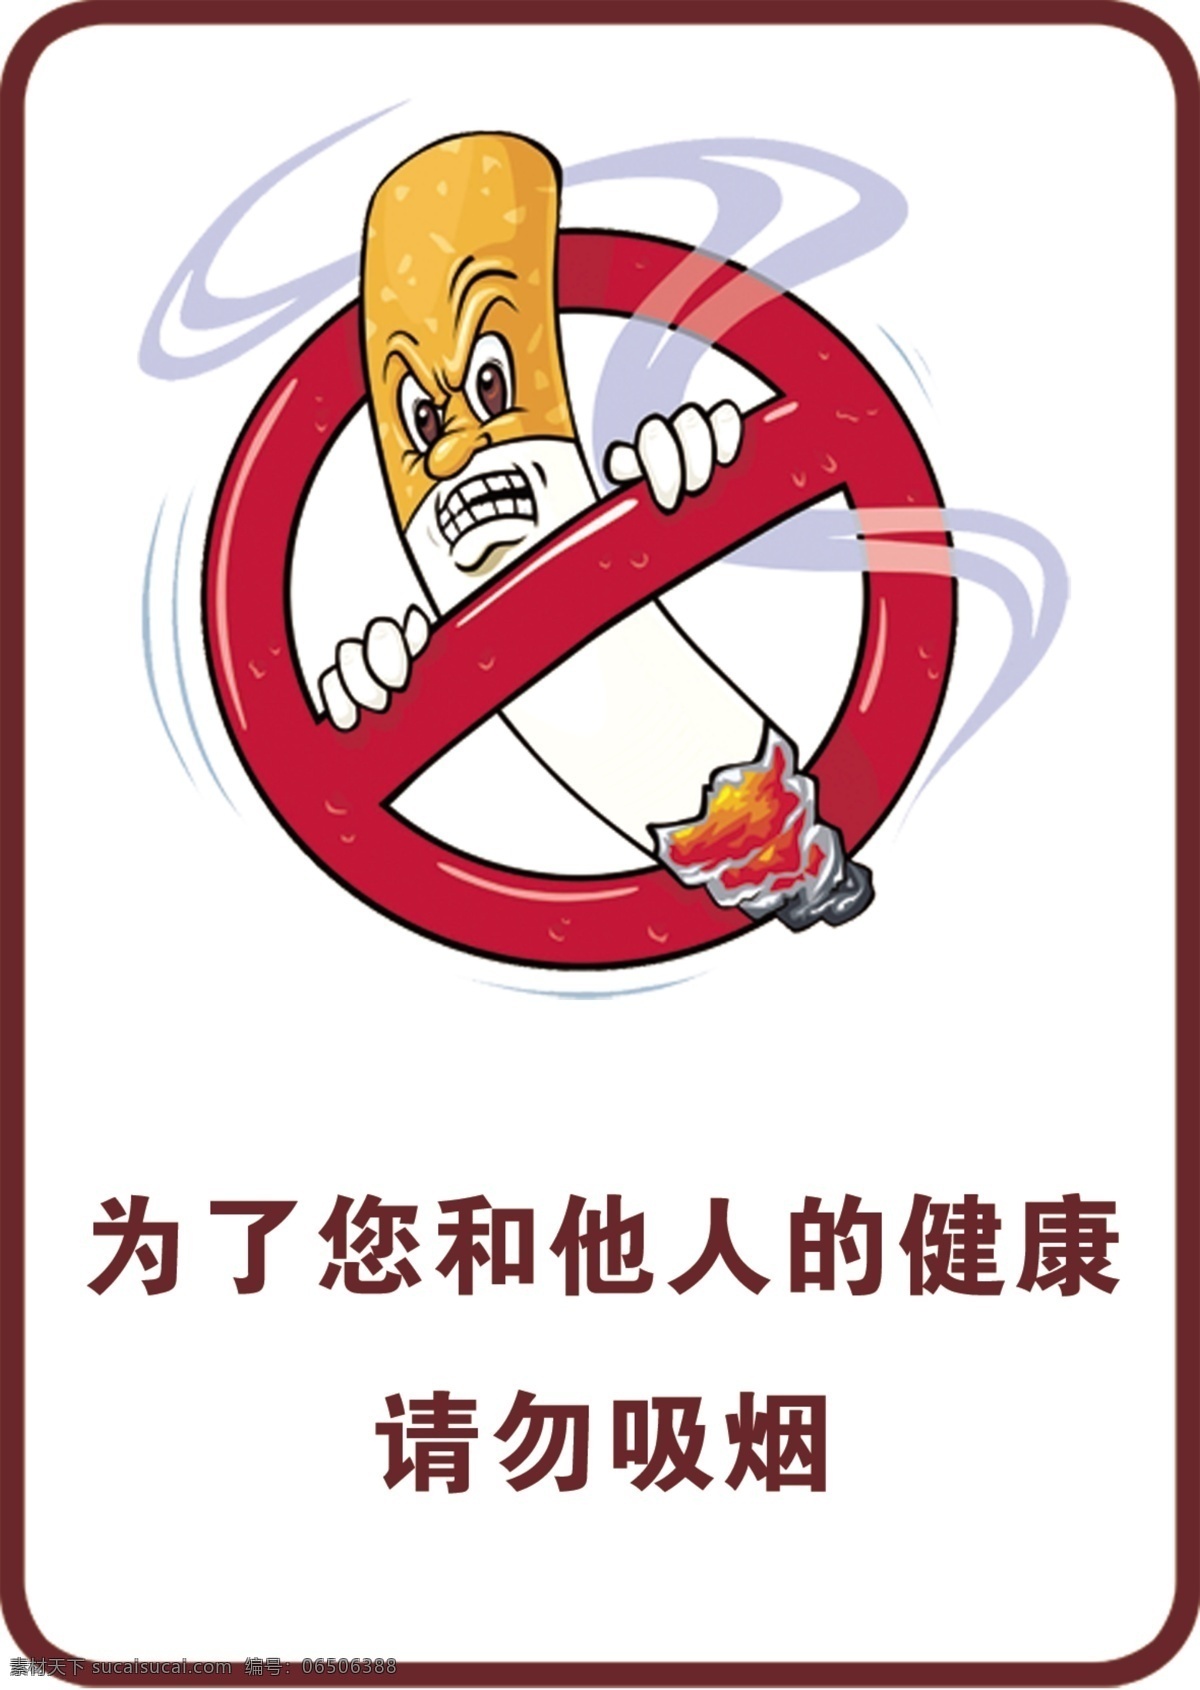 禁烟广告牌 禁烟 吸烟 标牌 健康 请勿